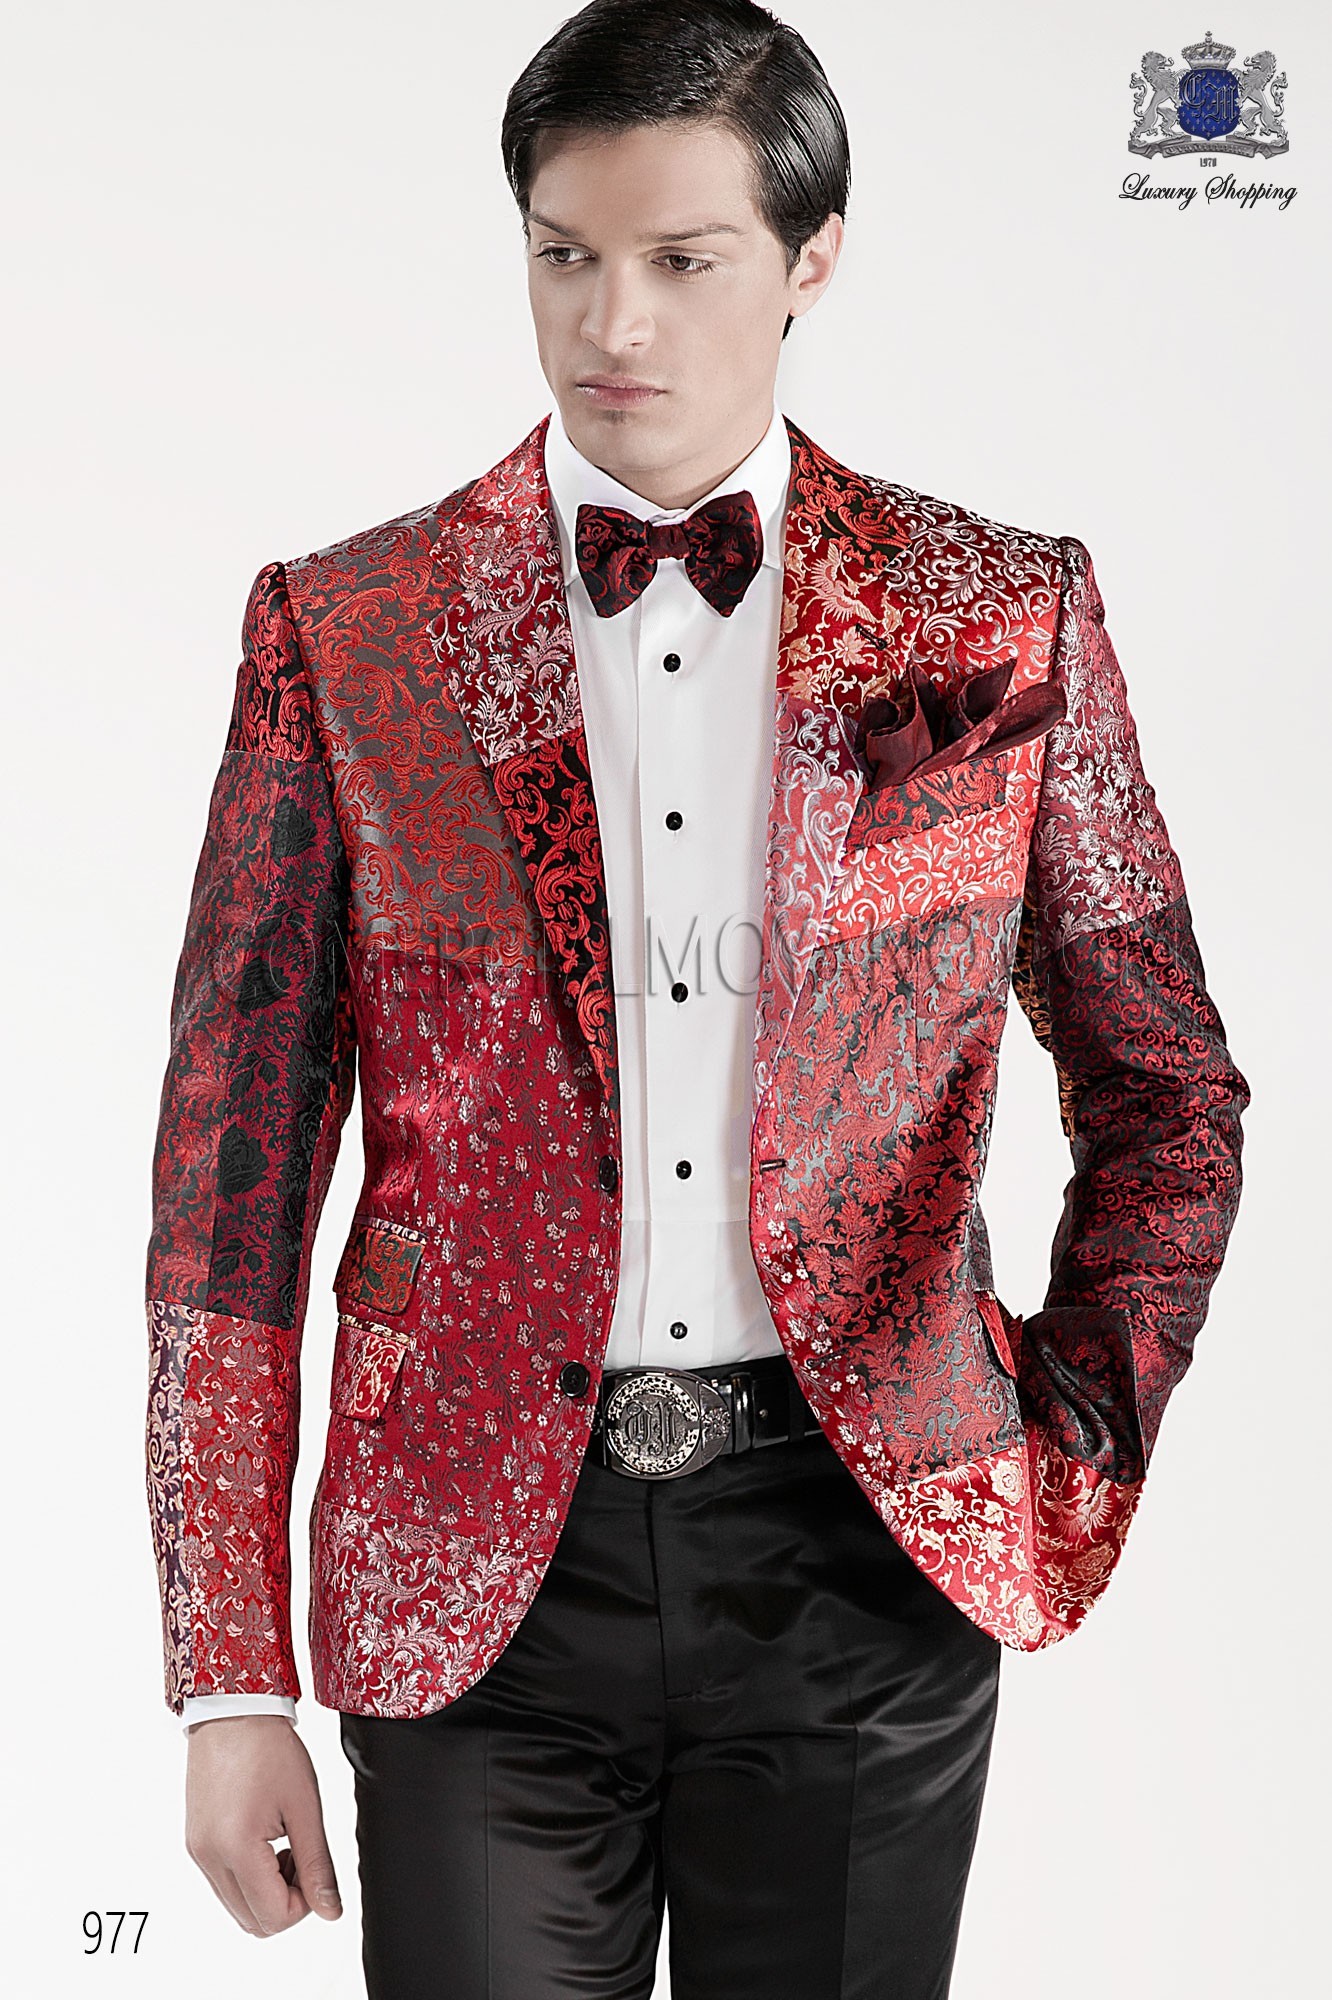 Traje de moda hombre negro/rojo modelo: 977 Mario Moyano colección Emotion